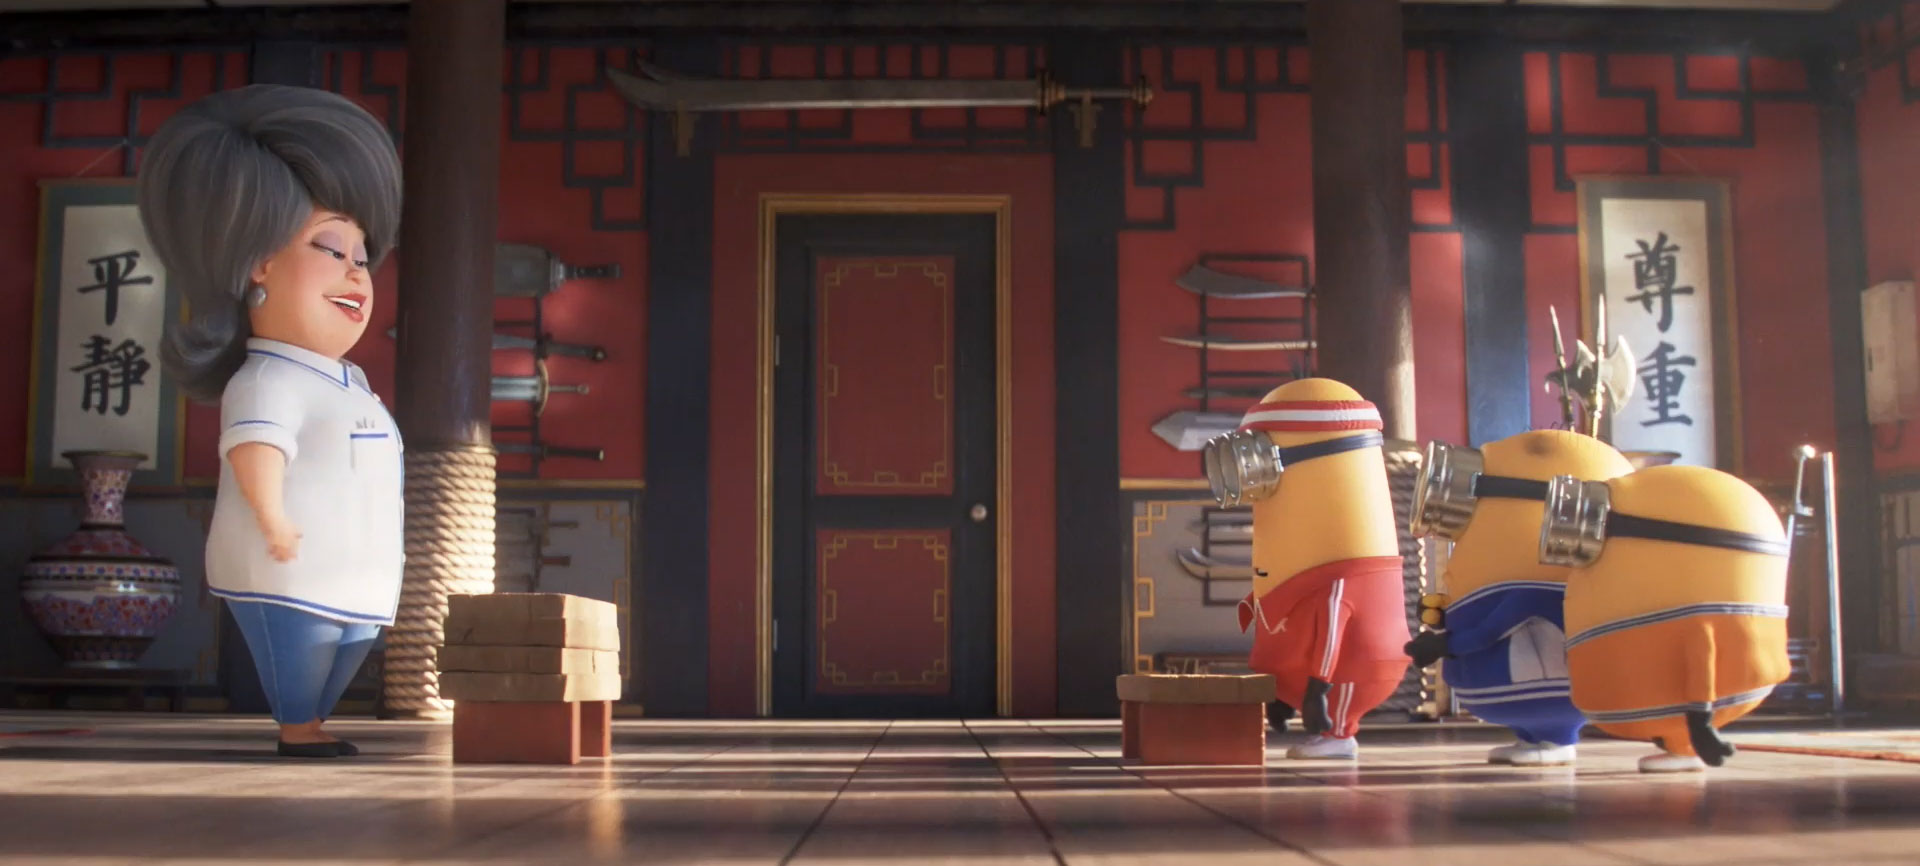 I Minions provano il Kung Fu, clip dal film Minions 2: Come Gru Diventa Cattivissimo